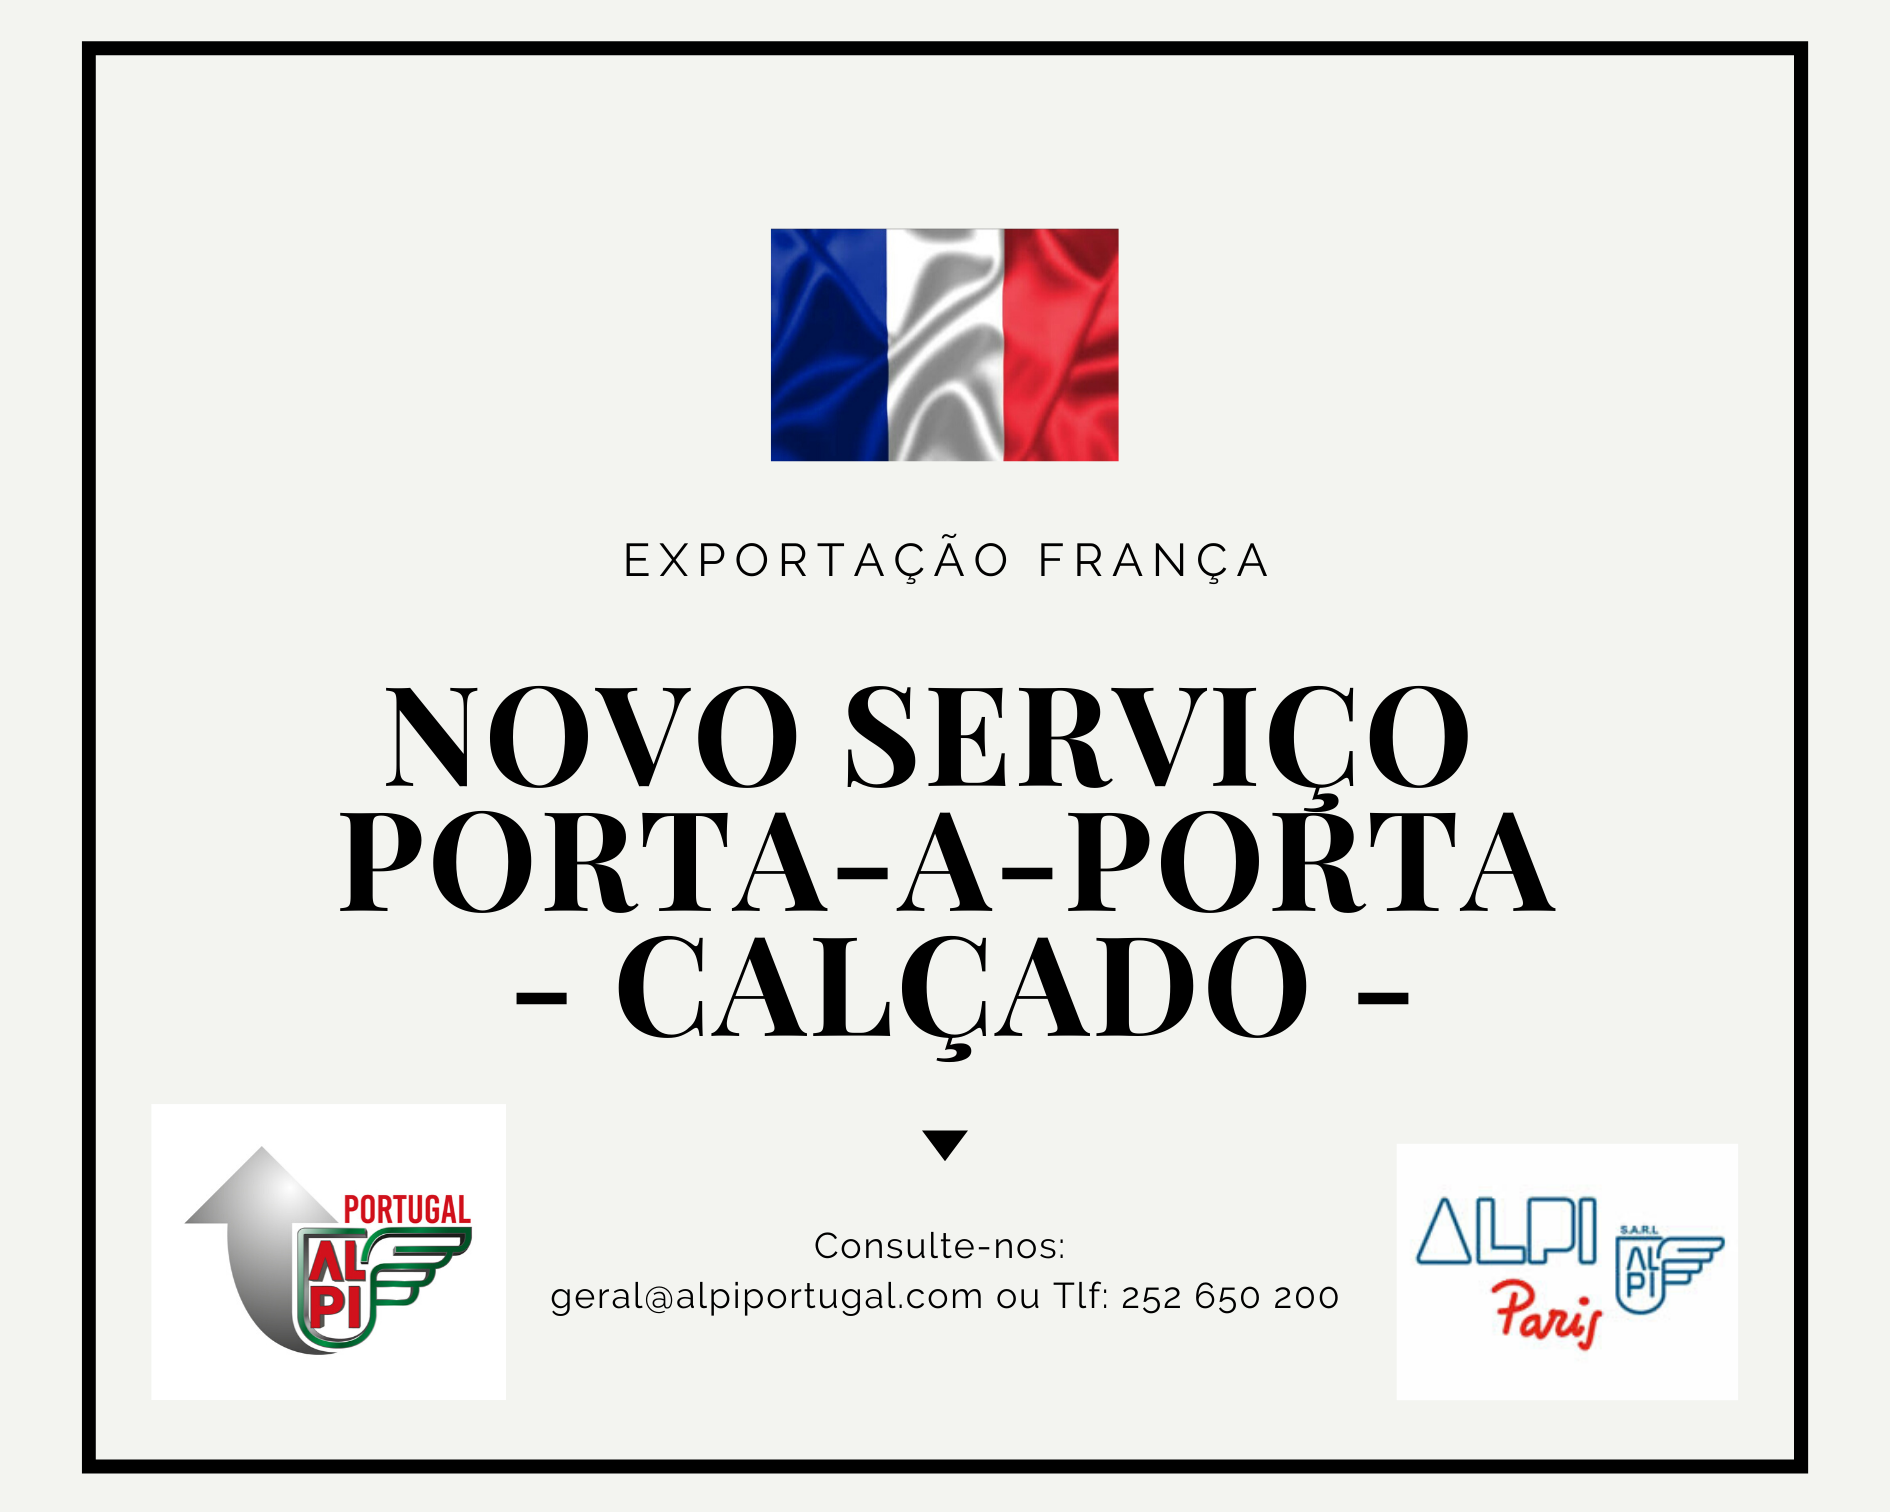 Novo Serviço FRANÇA - CALÇADO